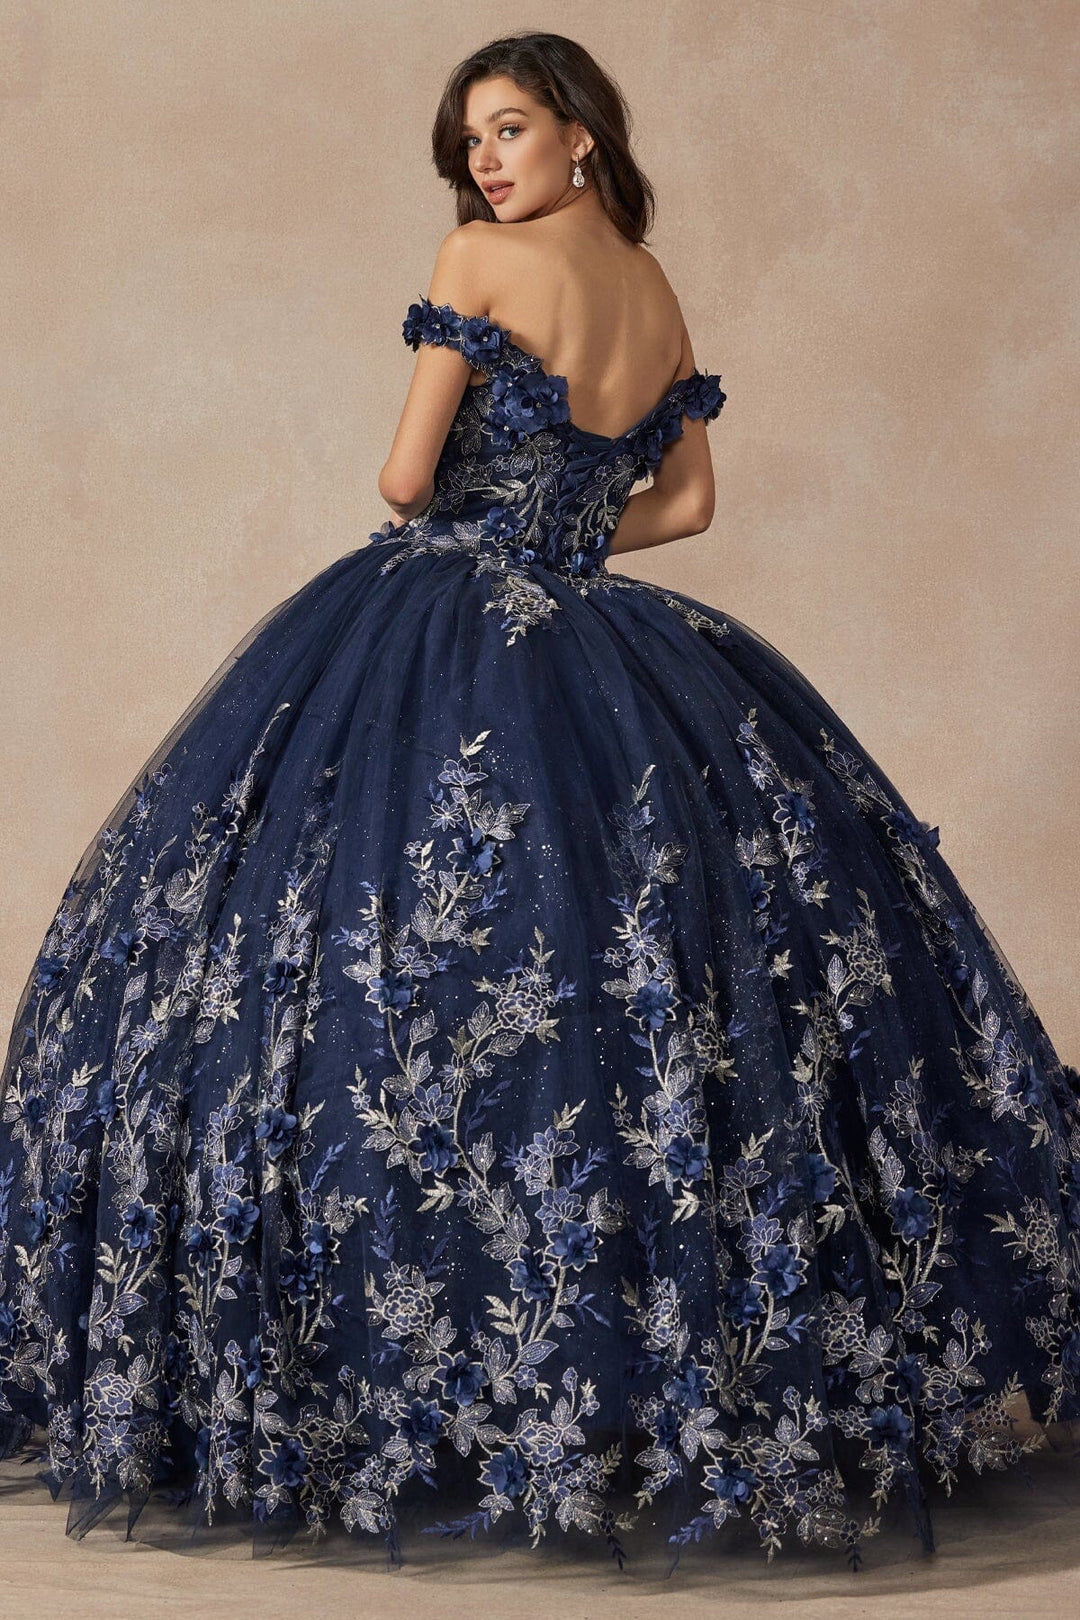 3D Floral Applique Off Shoulder Ball Gown by Juliet 1447